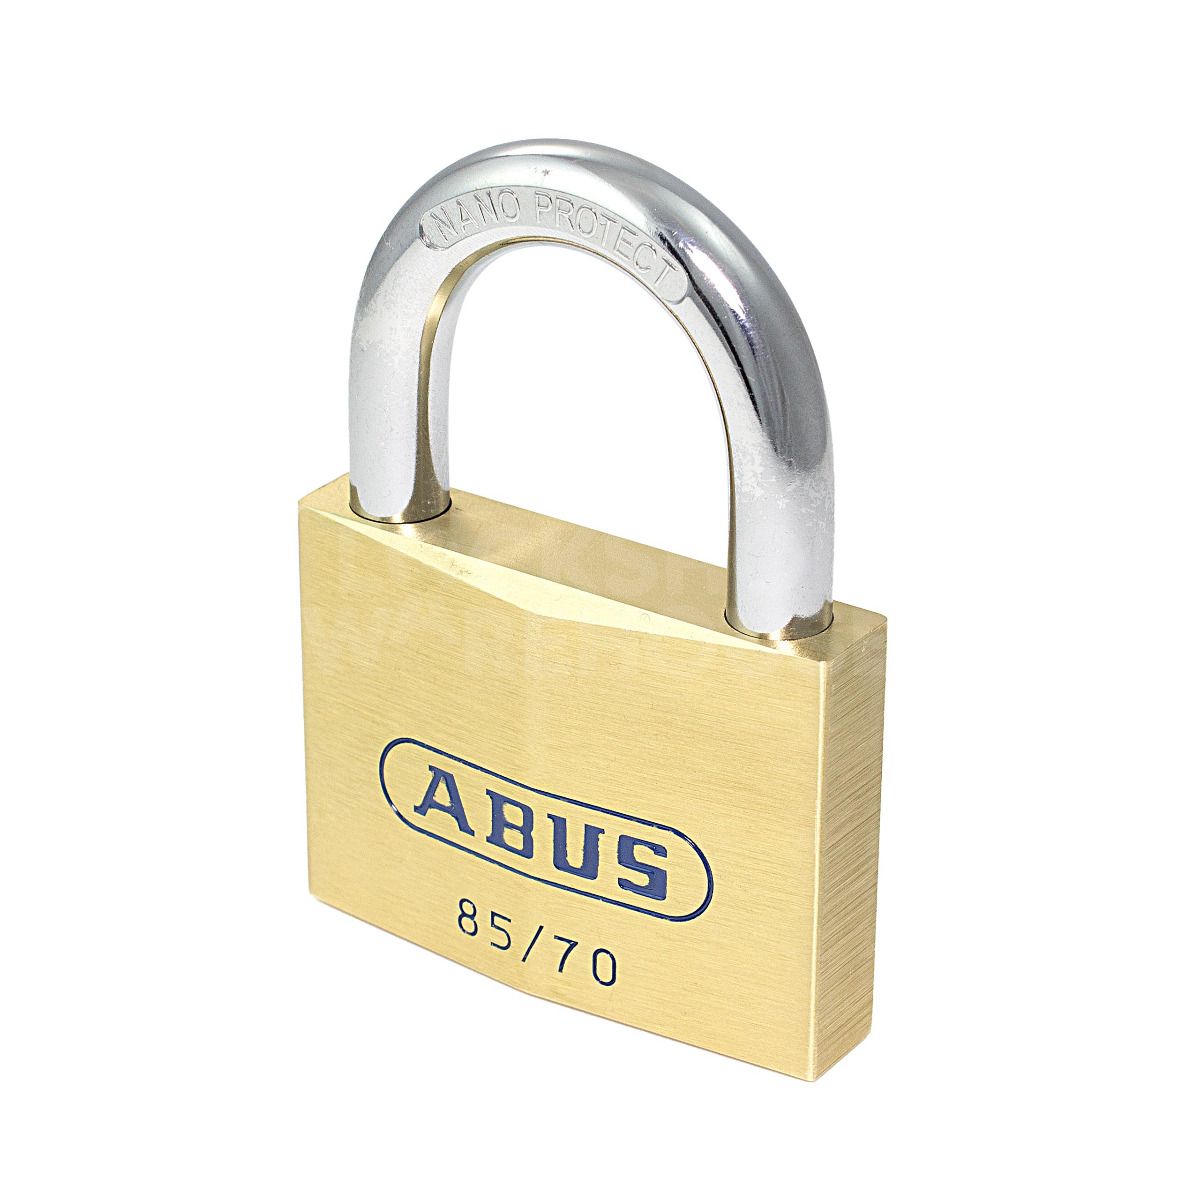 ABUS 85/70 Brass Padlock